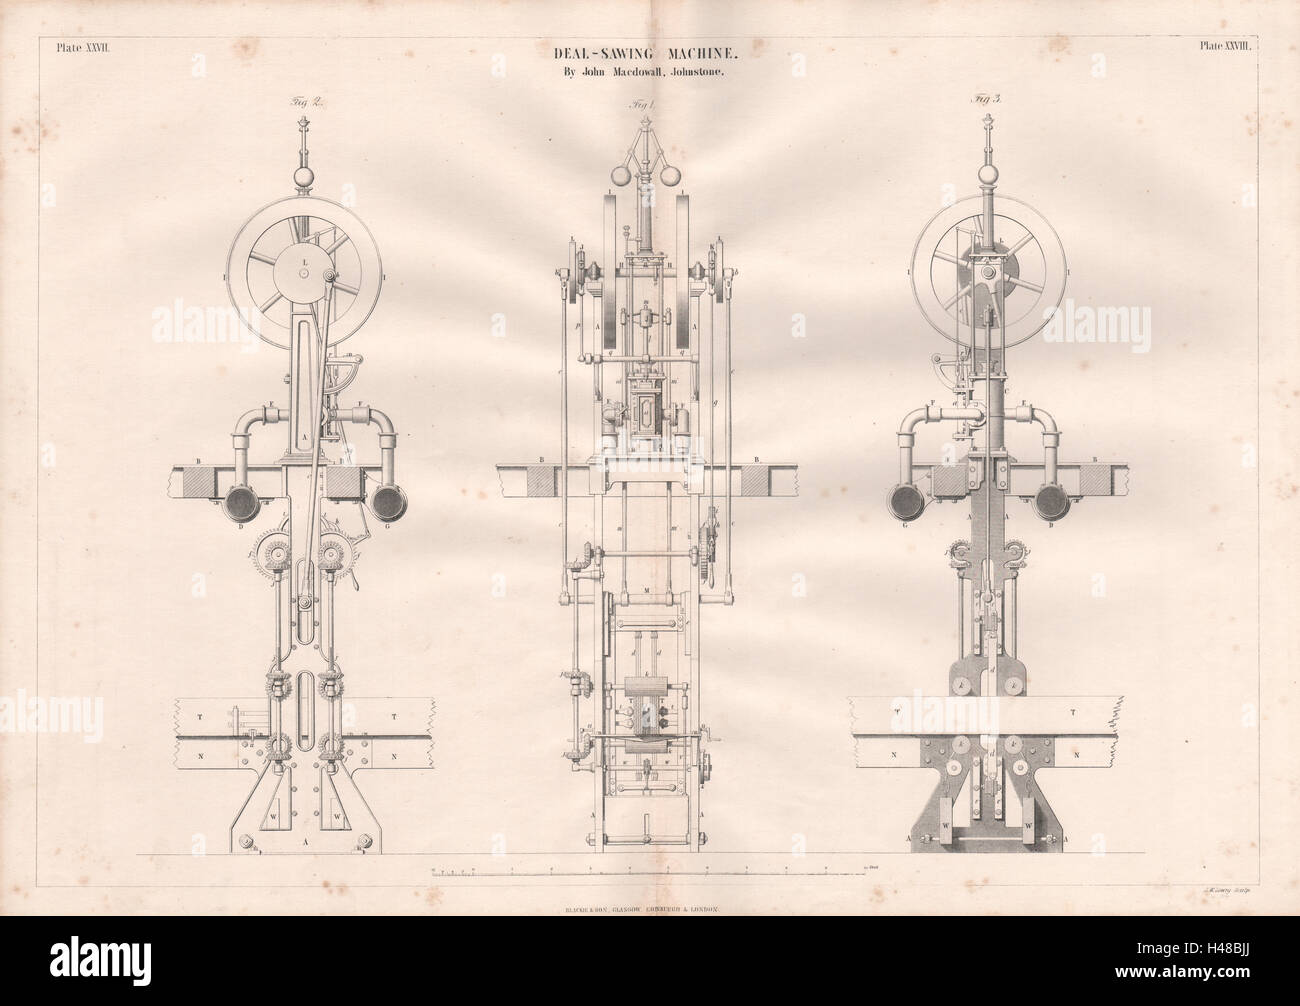 VIKTORIANISCHE technische Zeichnung viel Sägen Maschine. John Macdowall Johnstone 1847 Stockfoto